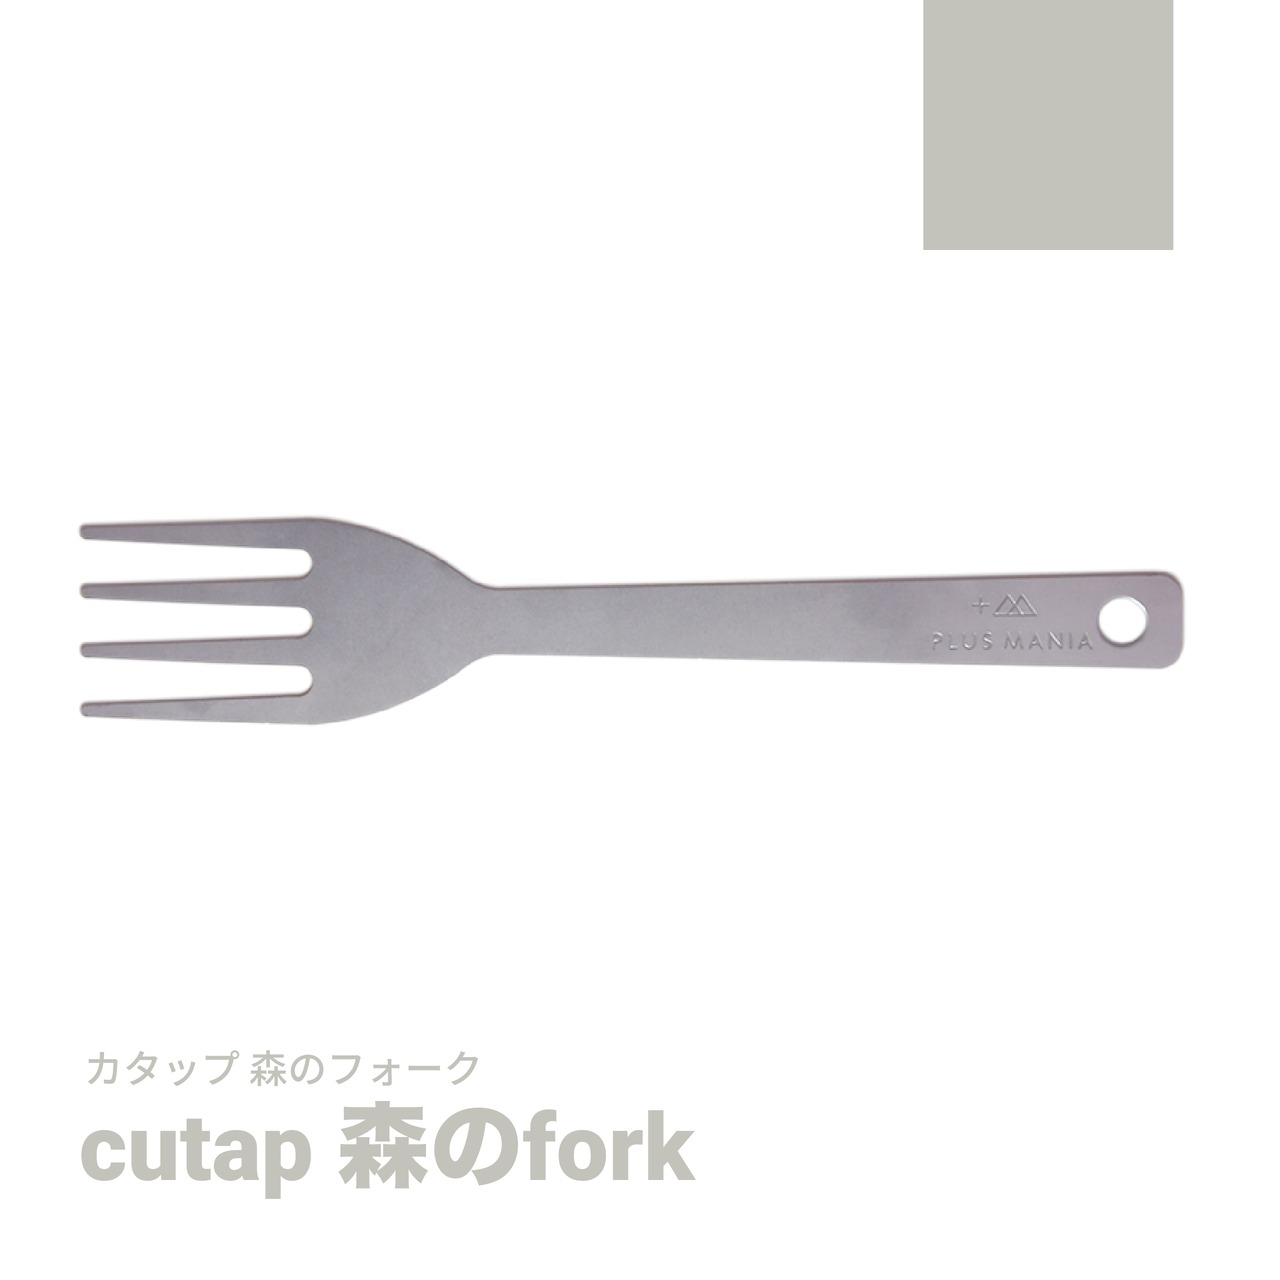 cutap [カタップ] 森のfork